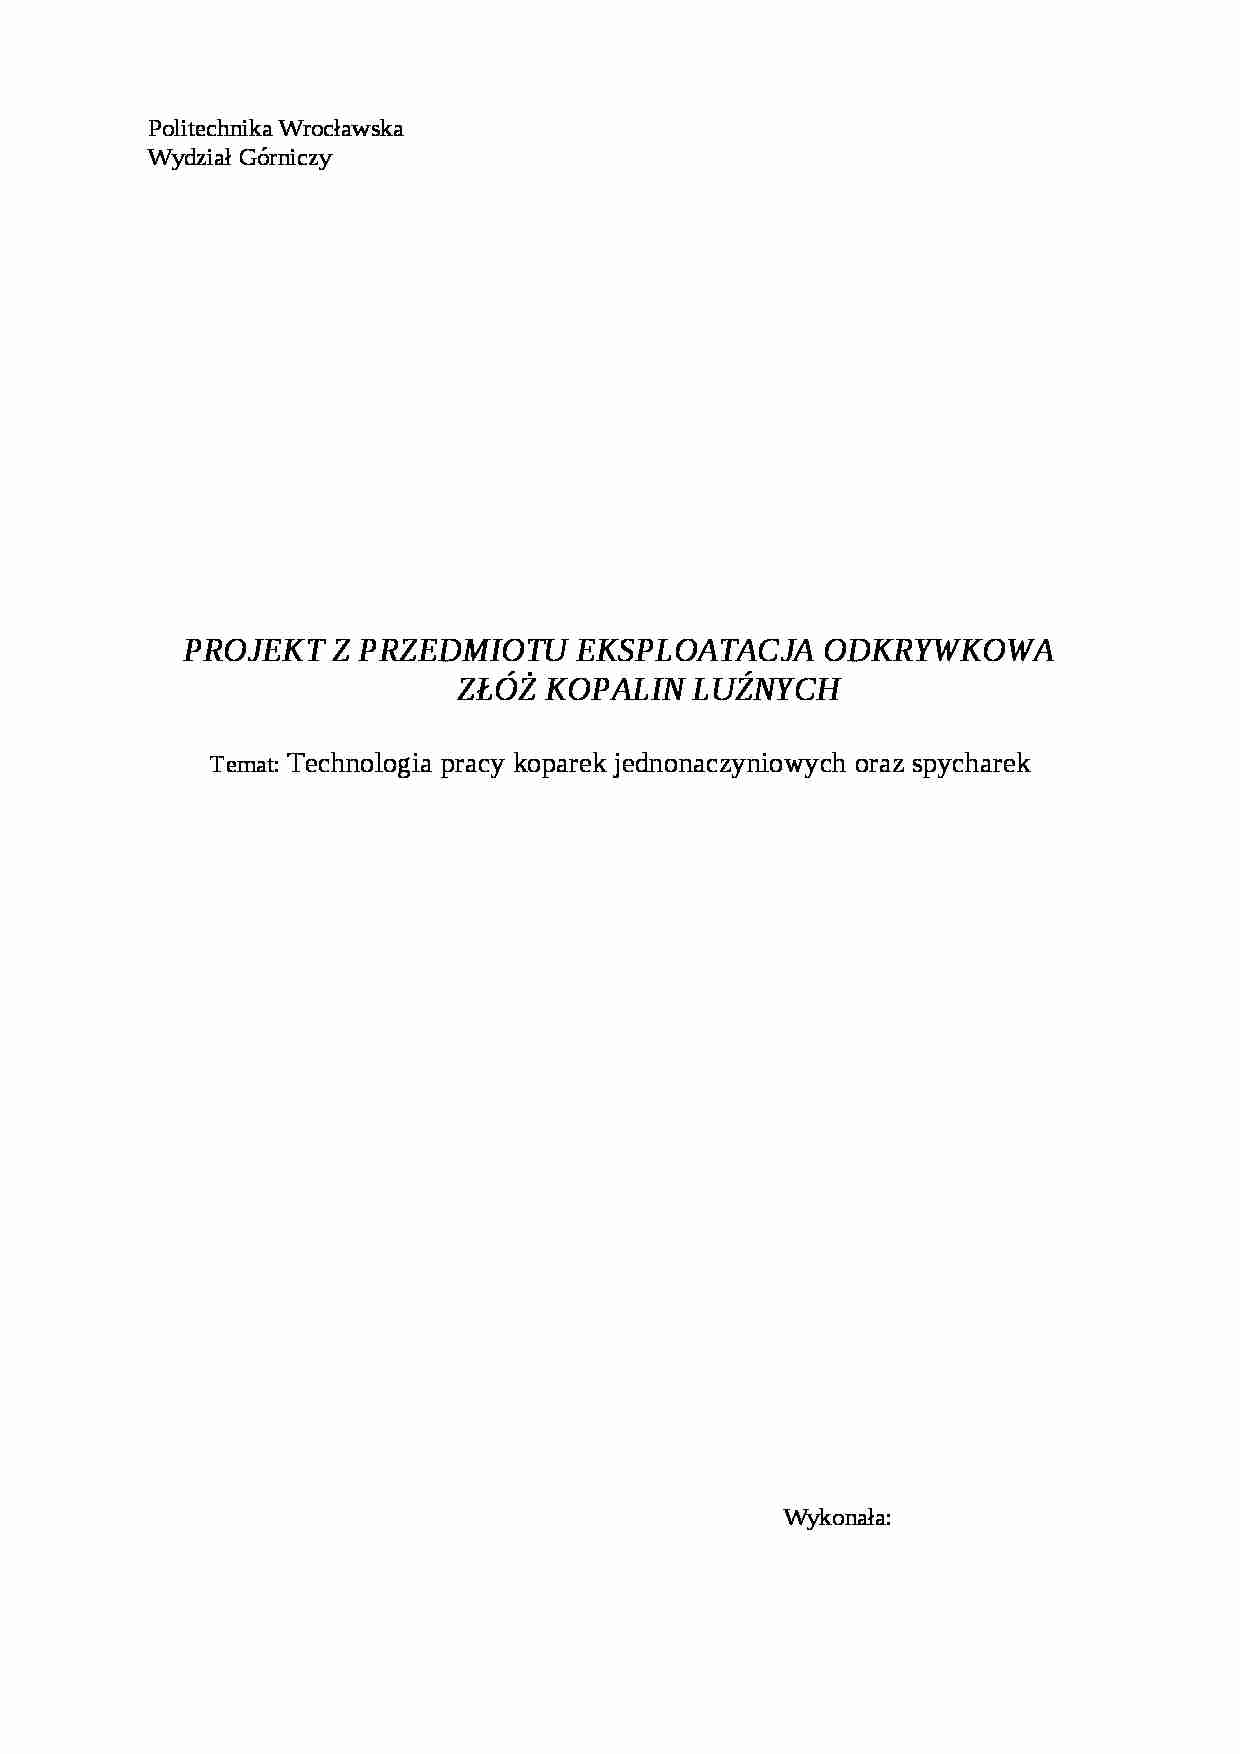 Technologia pracy koparek jednonaczyniowych oraz spycharek-projekt - strona 1